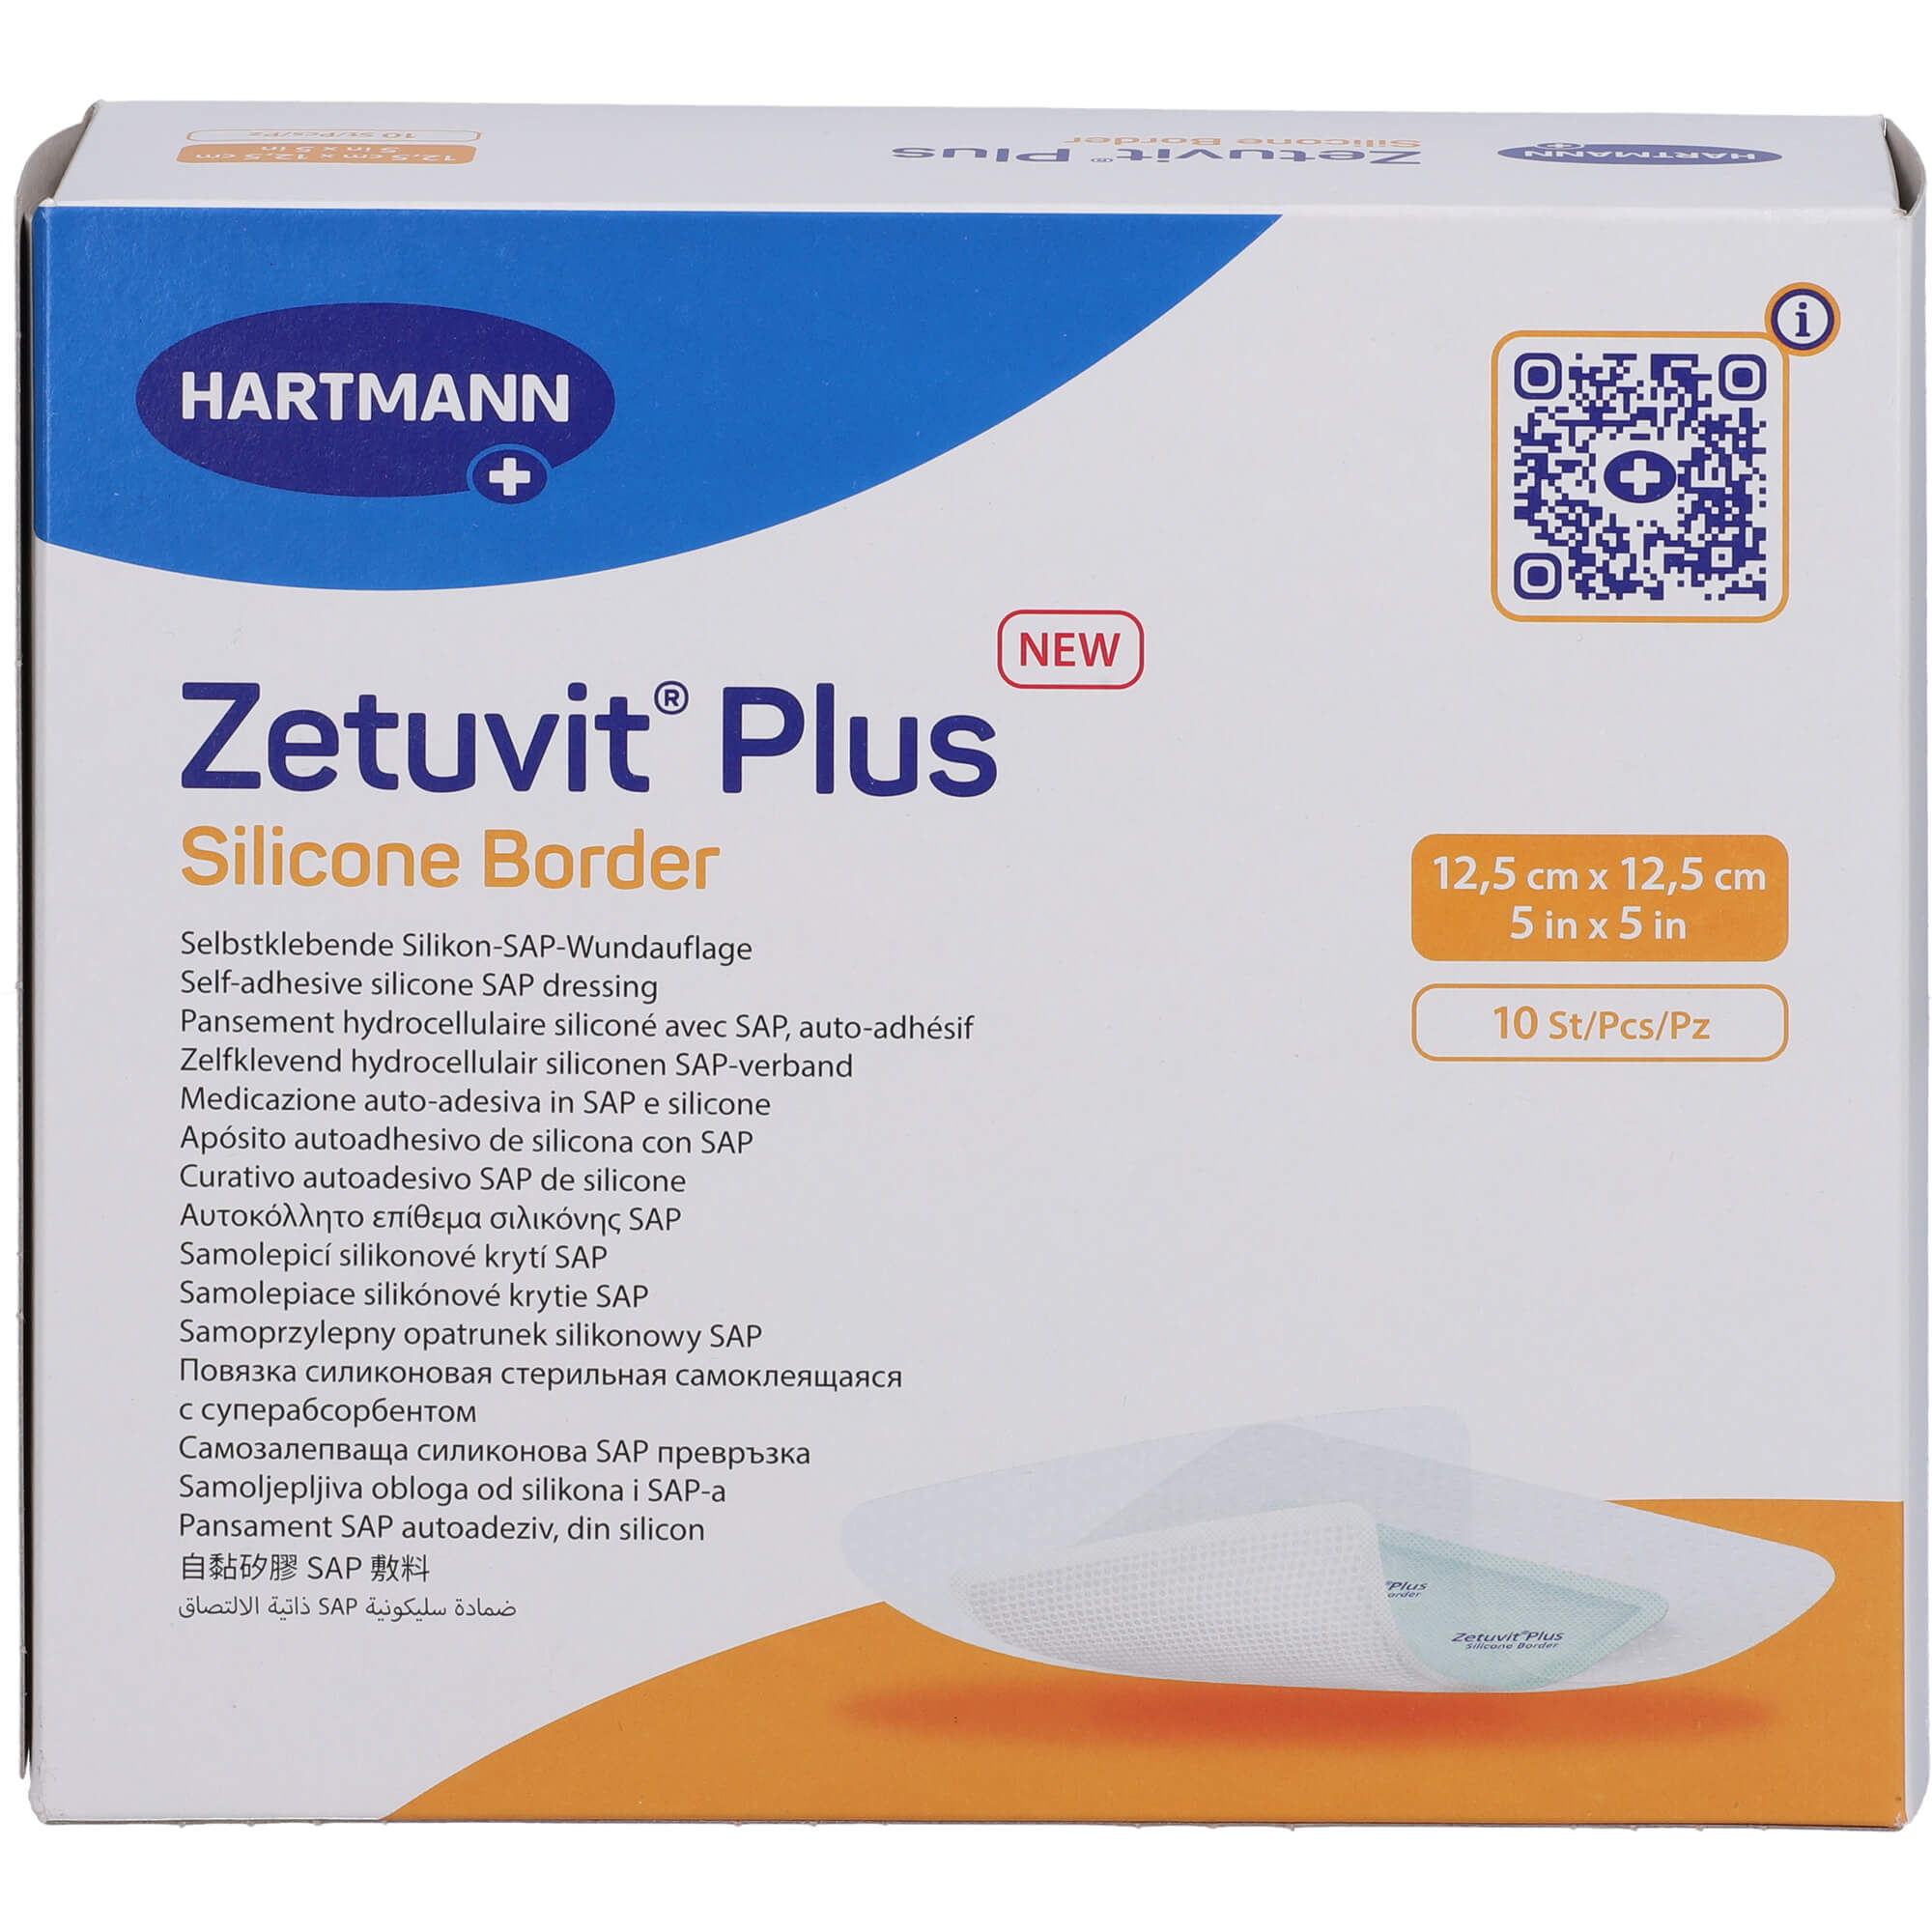 ZETUVIT Plus Silicone Border steril 12,5x12,5 cm